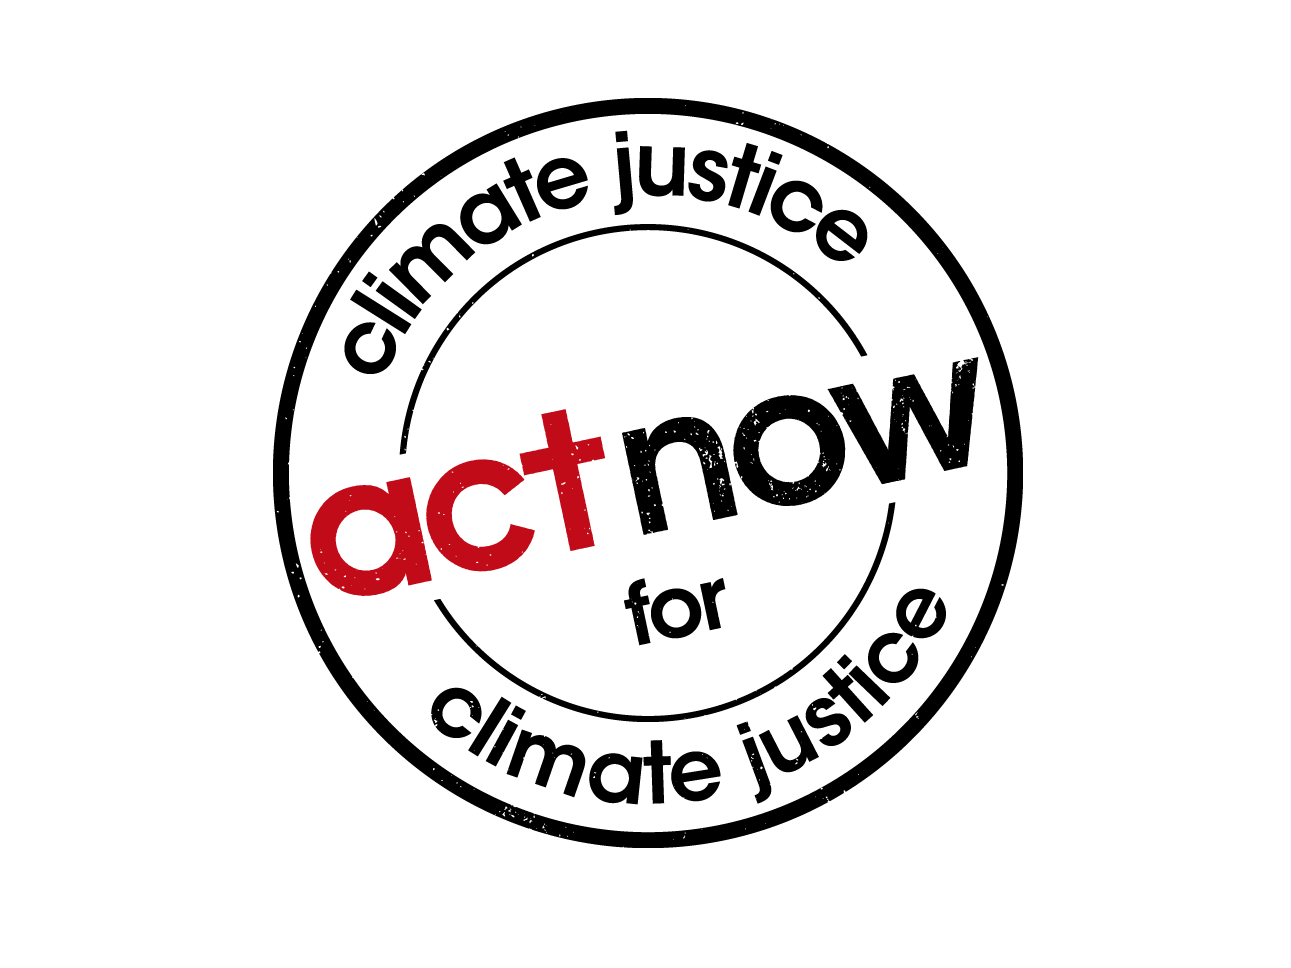 En bild av logon för kampanjen för klimaträttvisa. Det står "Act now for climate justice" i en cirkel